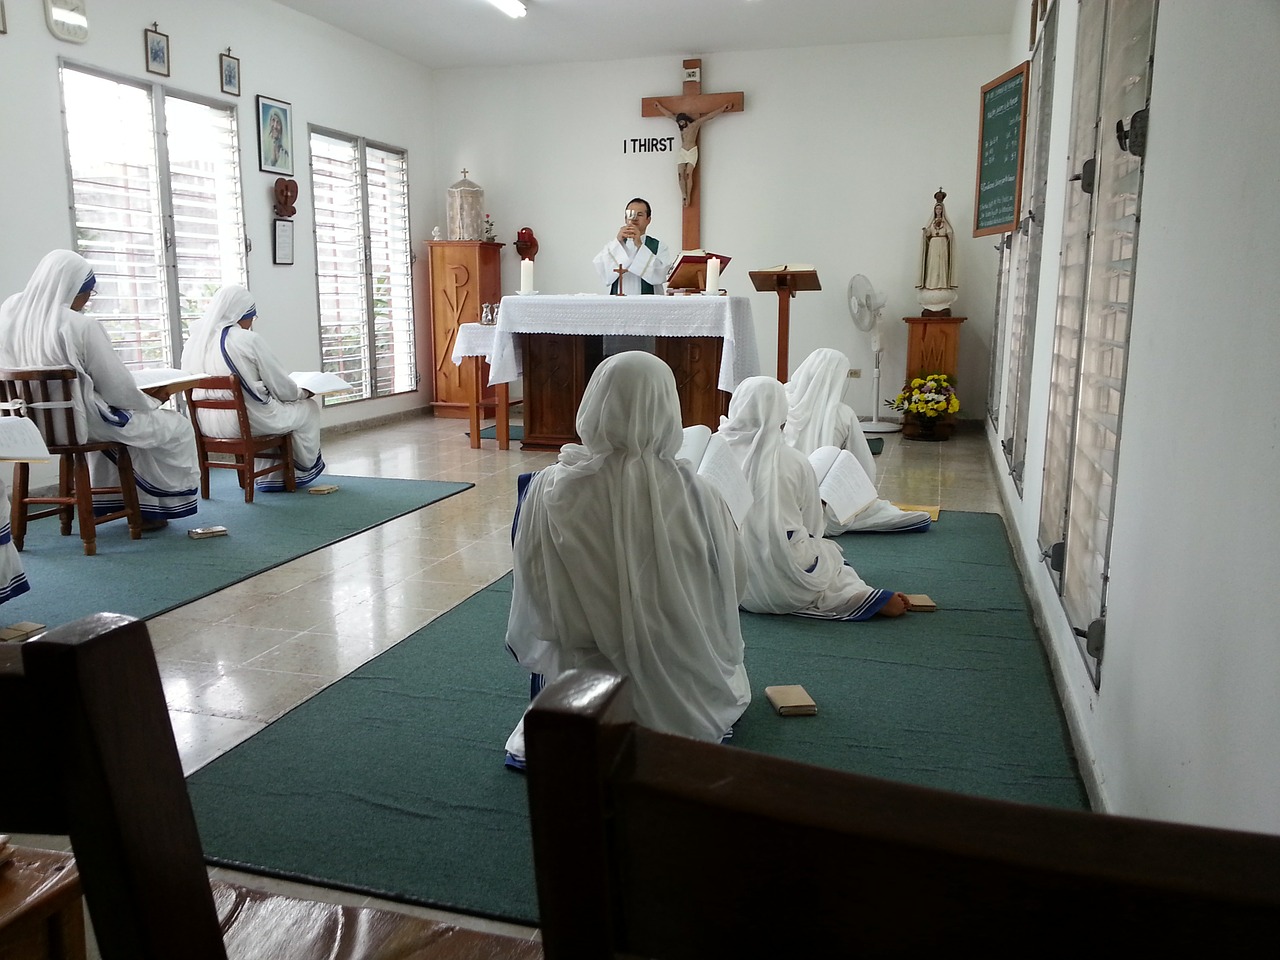 prayer worship religious free photo